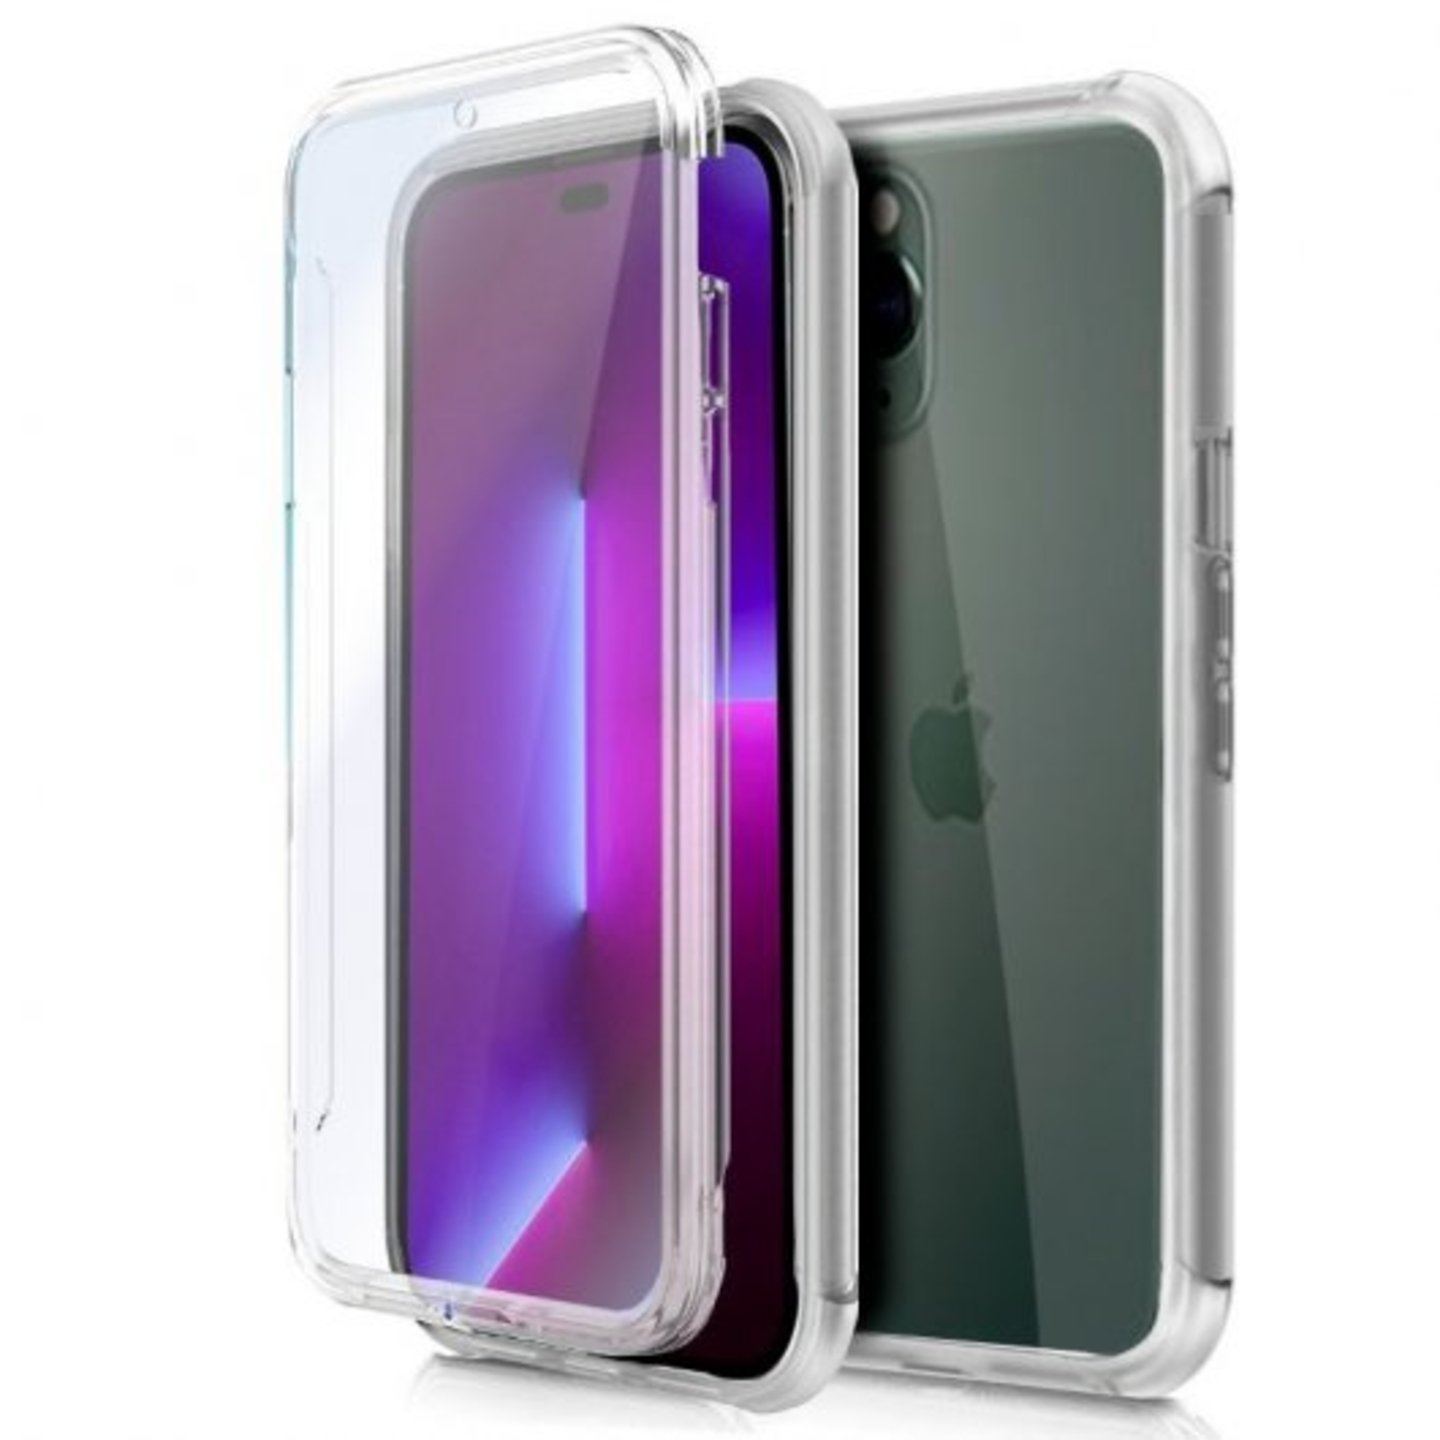 Funda transparente para iPhone XR de 6.1 pulgadas, resistente y resistente,  de grado militar, compatible con Otterbox Clip